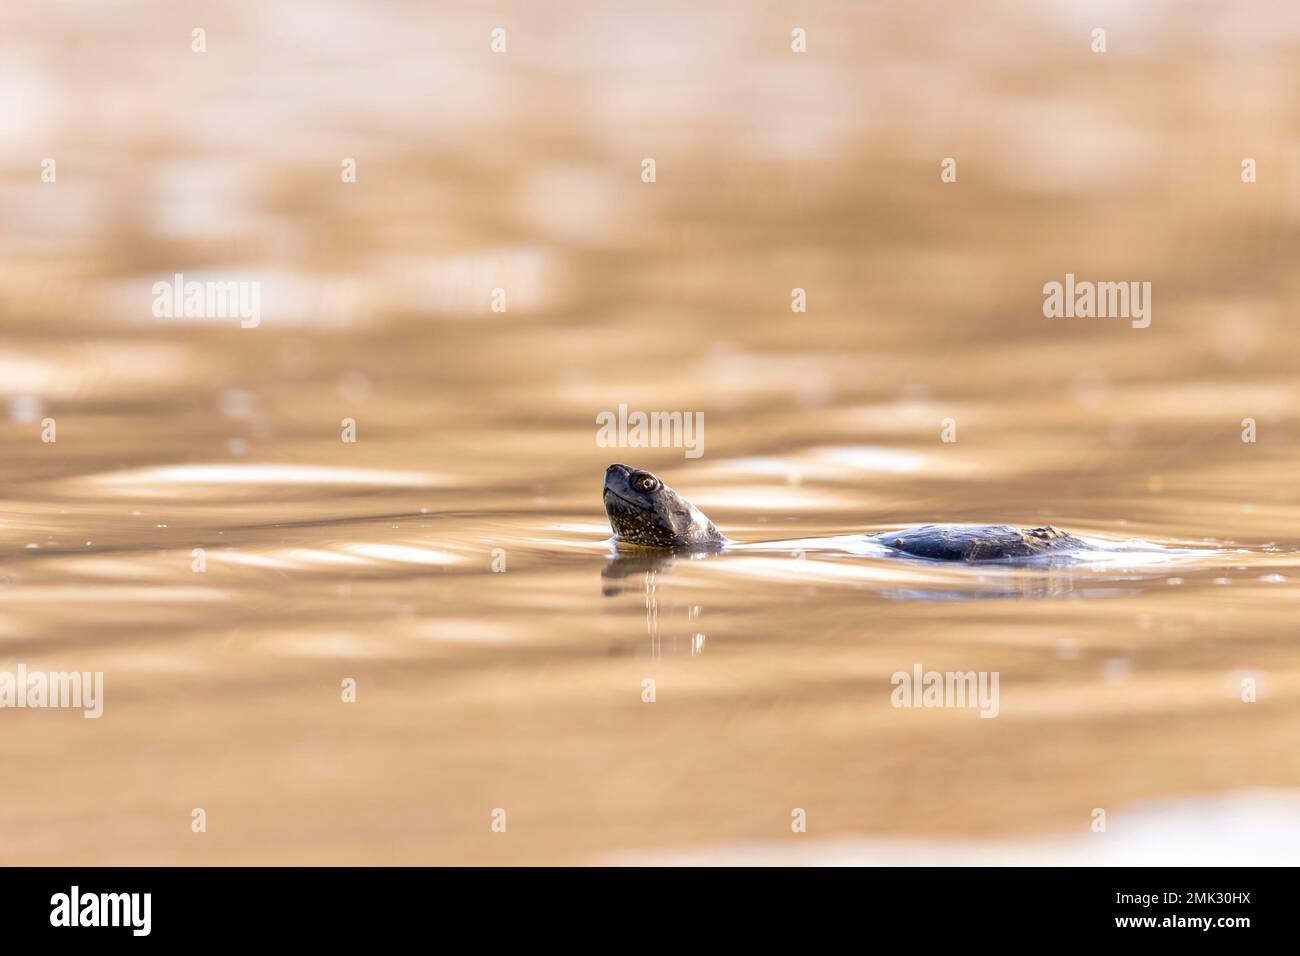 La tortue d'étang européenne, l'étang européen terrapin, la tortue d'étang européenne (Emys orbicularis). Banque D'Images